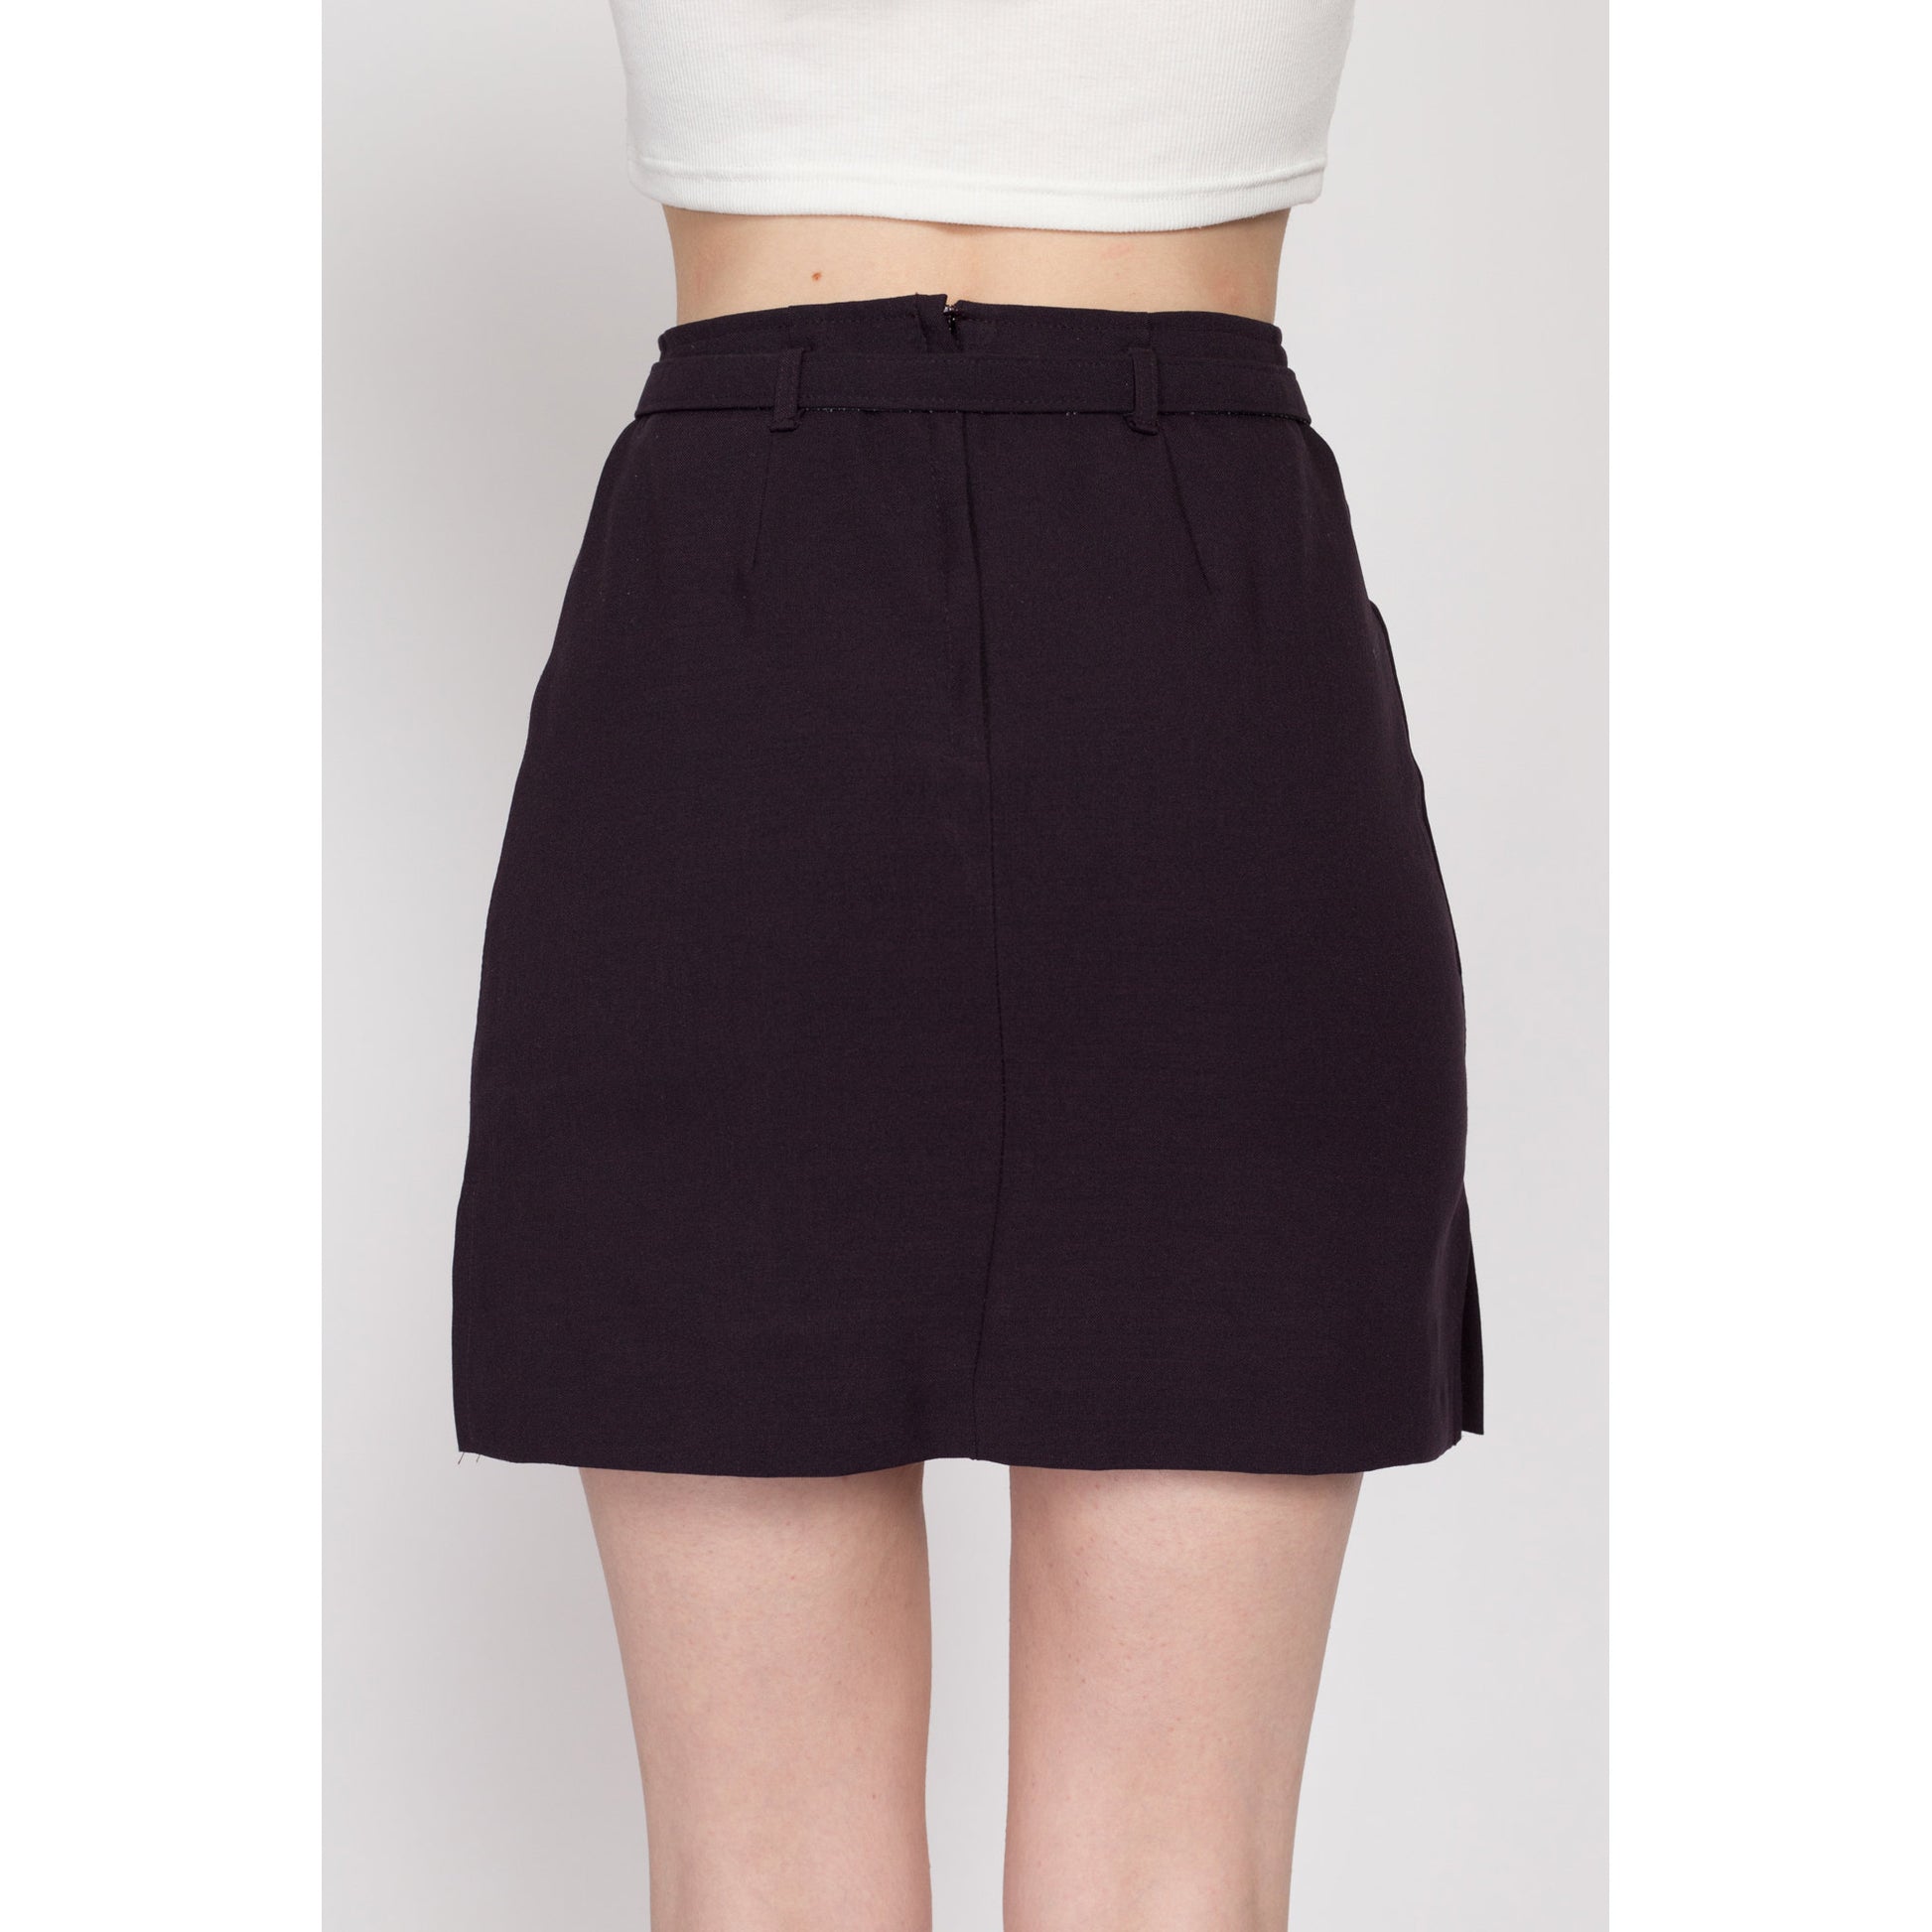 XS 90s Plum Purple Belted Mini Skirt 25" | Vintage High Waisted A Line Minimalist Miniskirt